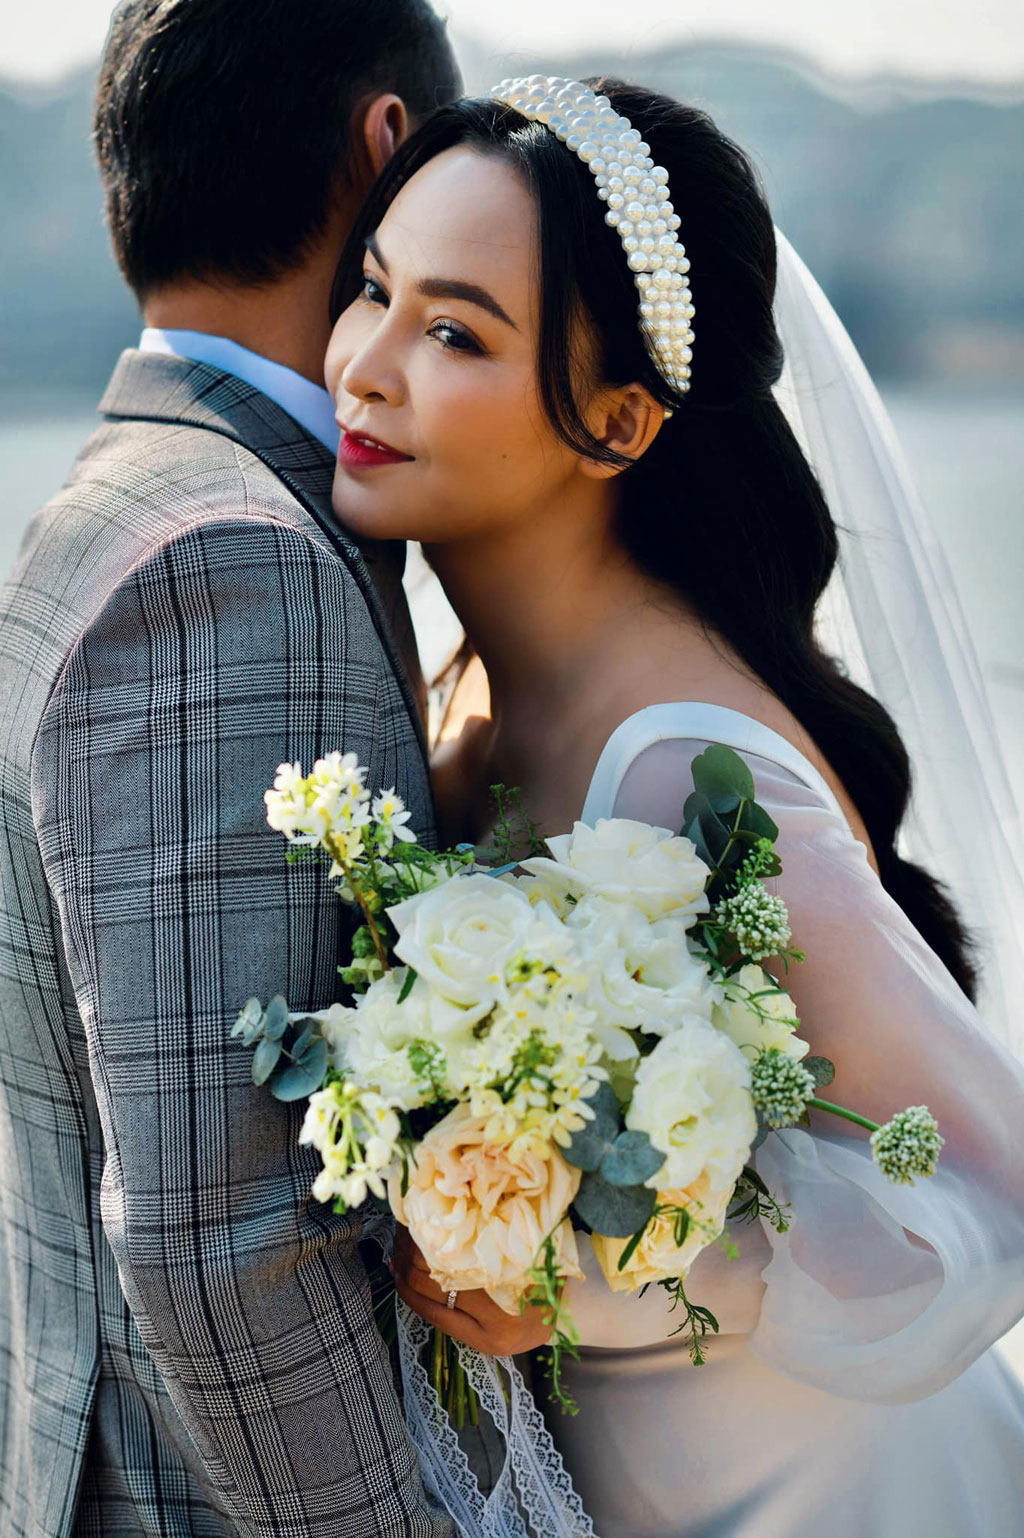 Kim Cương diện đầm lộng lẫy trong đám cưới, nhưng thiết kế này của cô lại  khiến nhiều người thấy quen quen